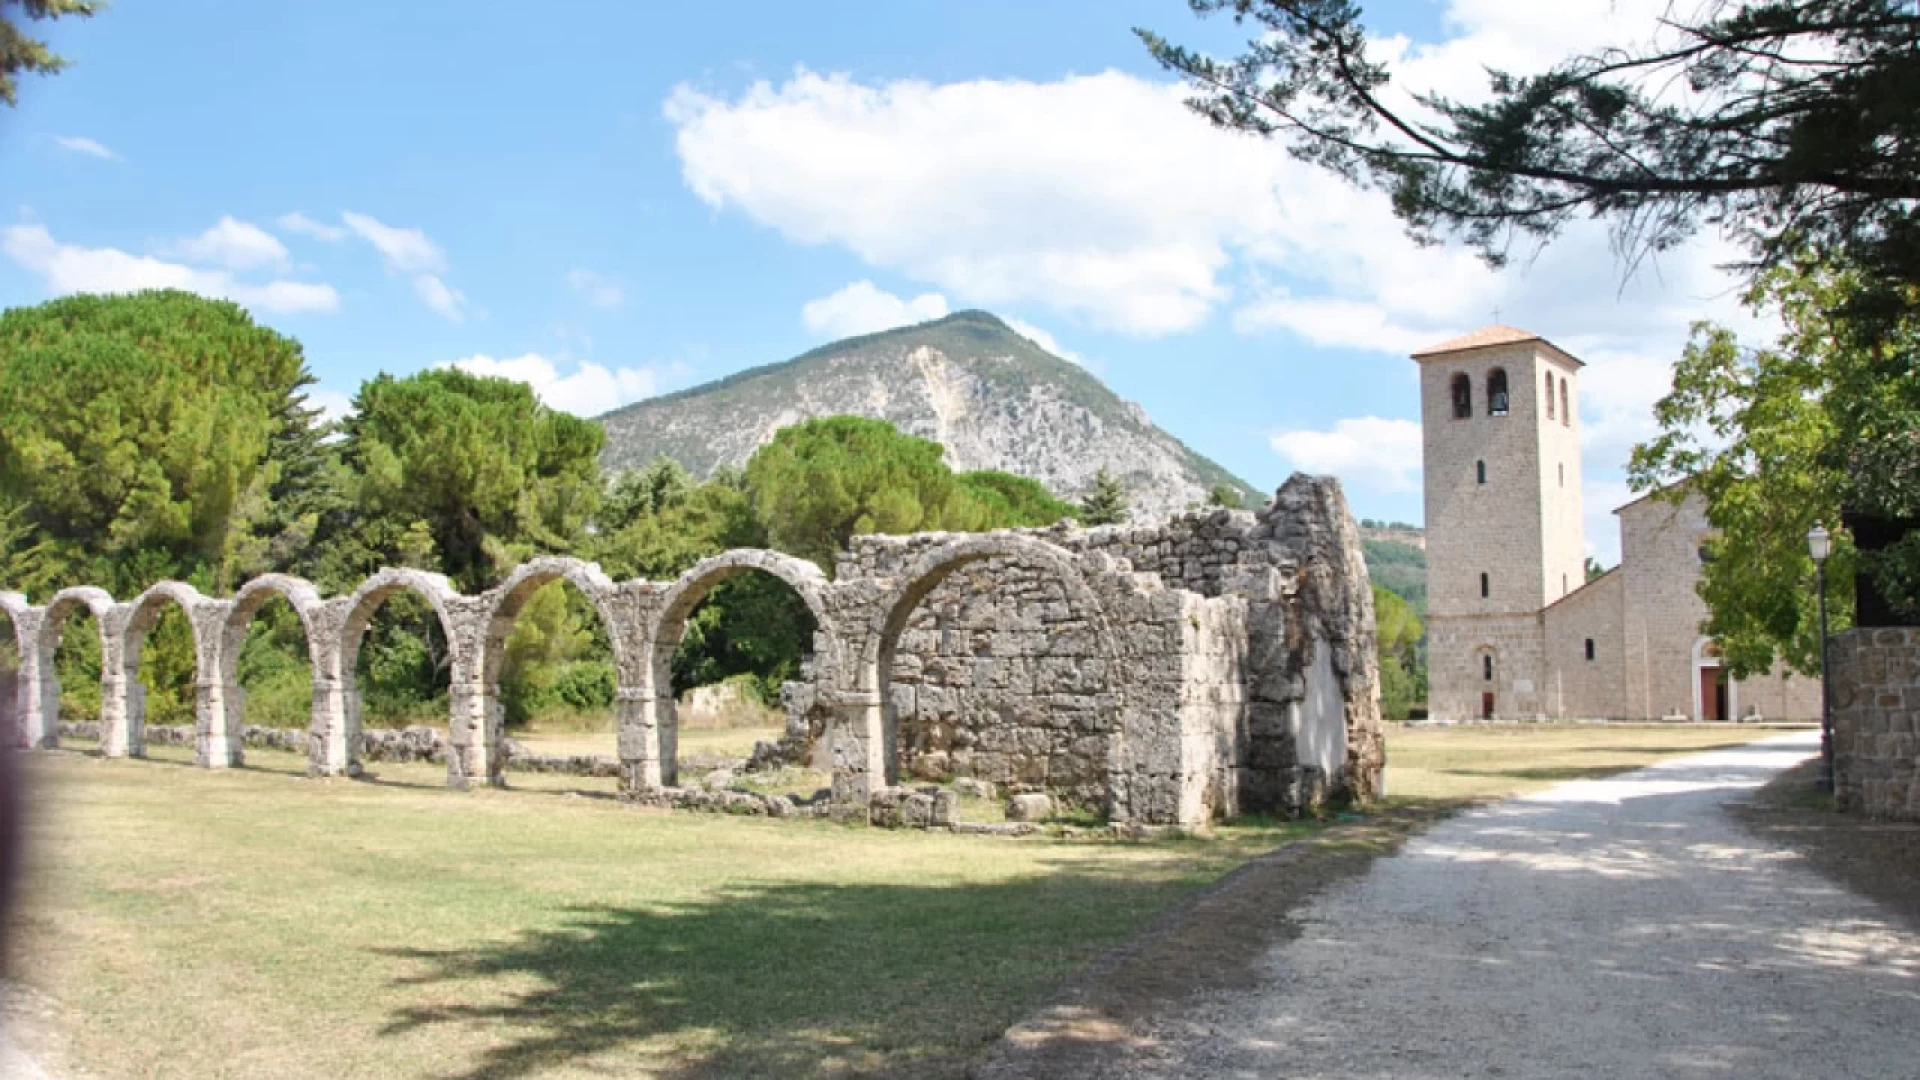 L’Area archeologica di San Vincenzo al Volturno chiusa per due giorni ai visitatori. La nota della Direzione Regionale Musei Molise.